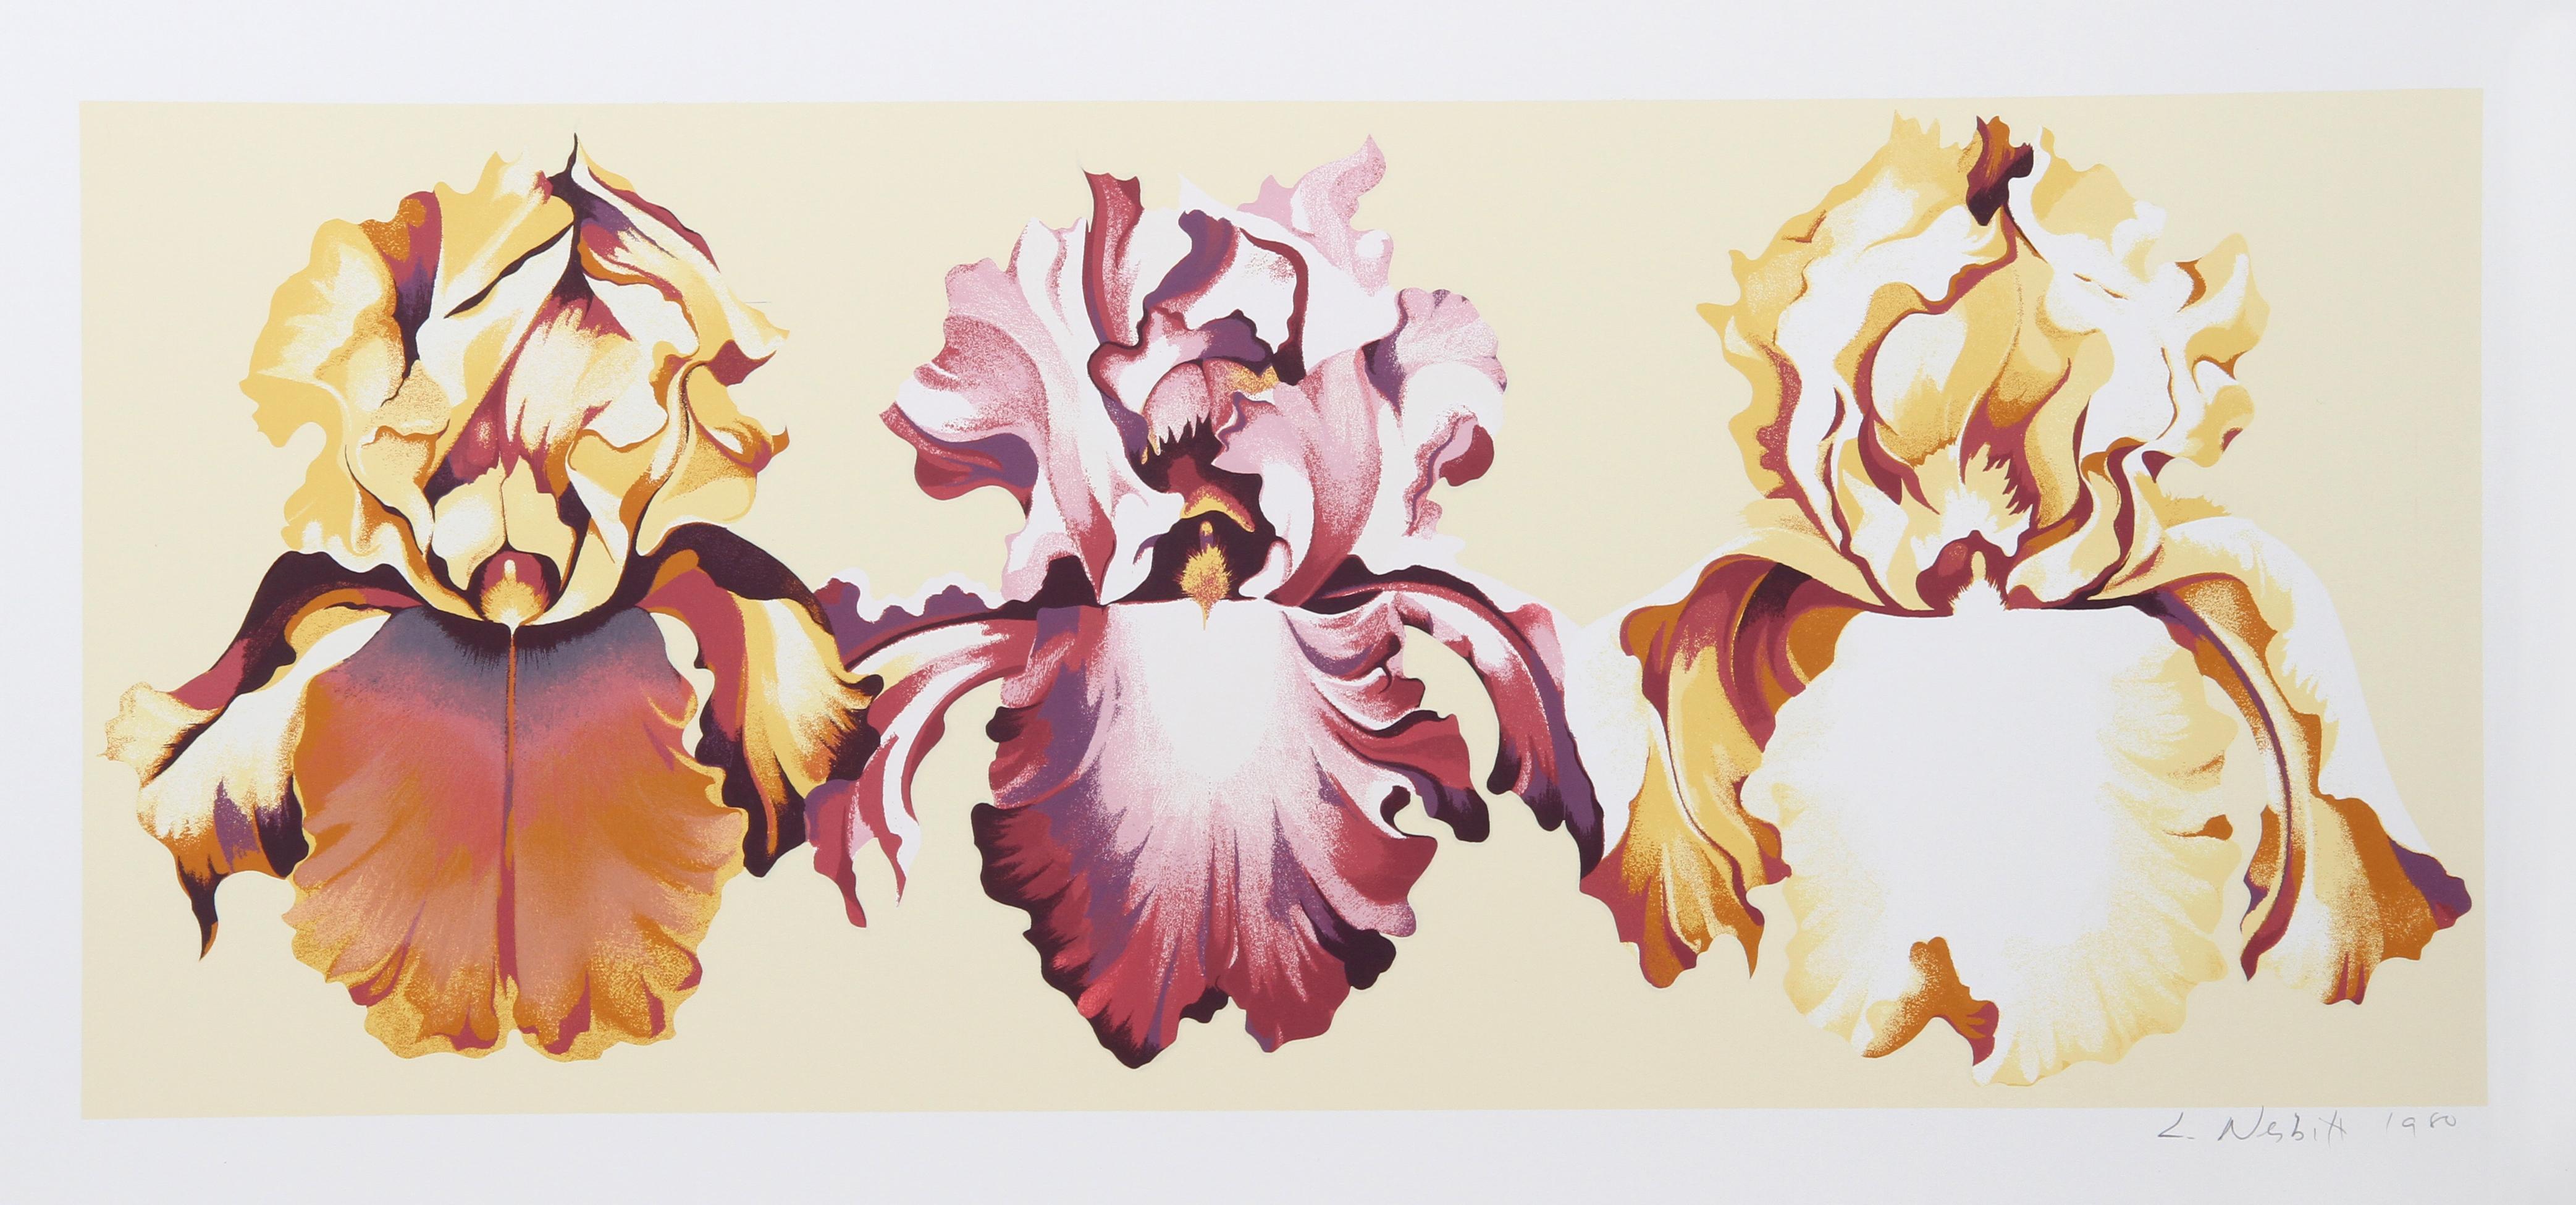 Künstler: Lowell Blair Nesbitt, Amerikaner (1933 - 1993)
Titel: Drei Schwertlilien auf Gelb
Jahr: 1980
Medium: Siebdruck, signiert und nummeriert mit Bleistift
Auflage: 200
Bildgröße: 15,25 x 36 Zoll
Größe: 21.5 in. x 42 in. (54,61 cm x 106,68 cm)